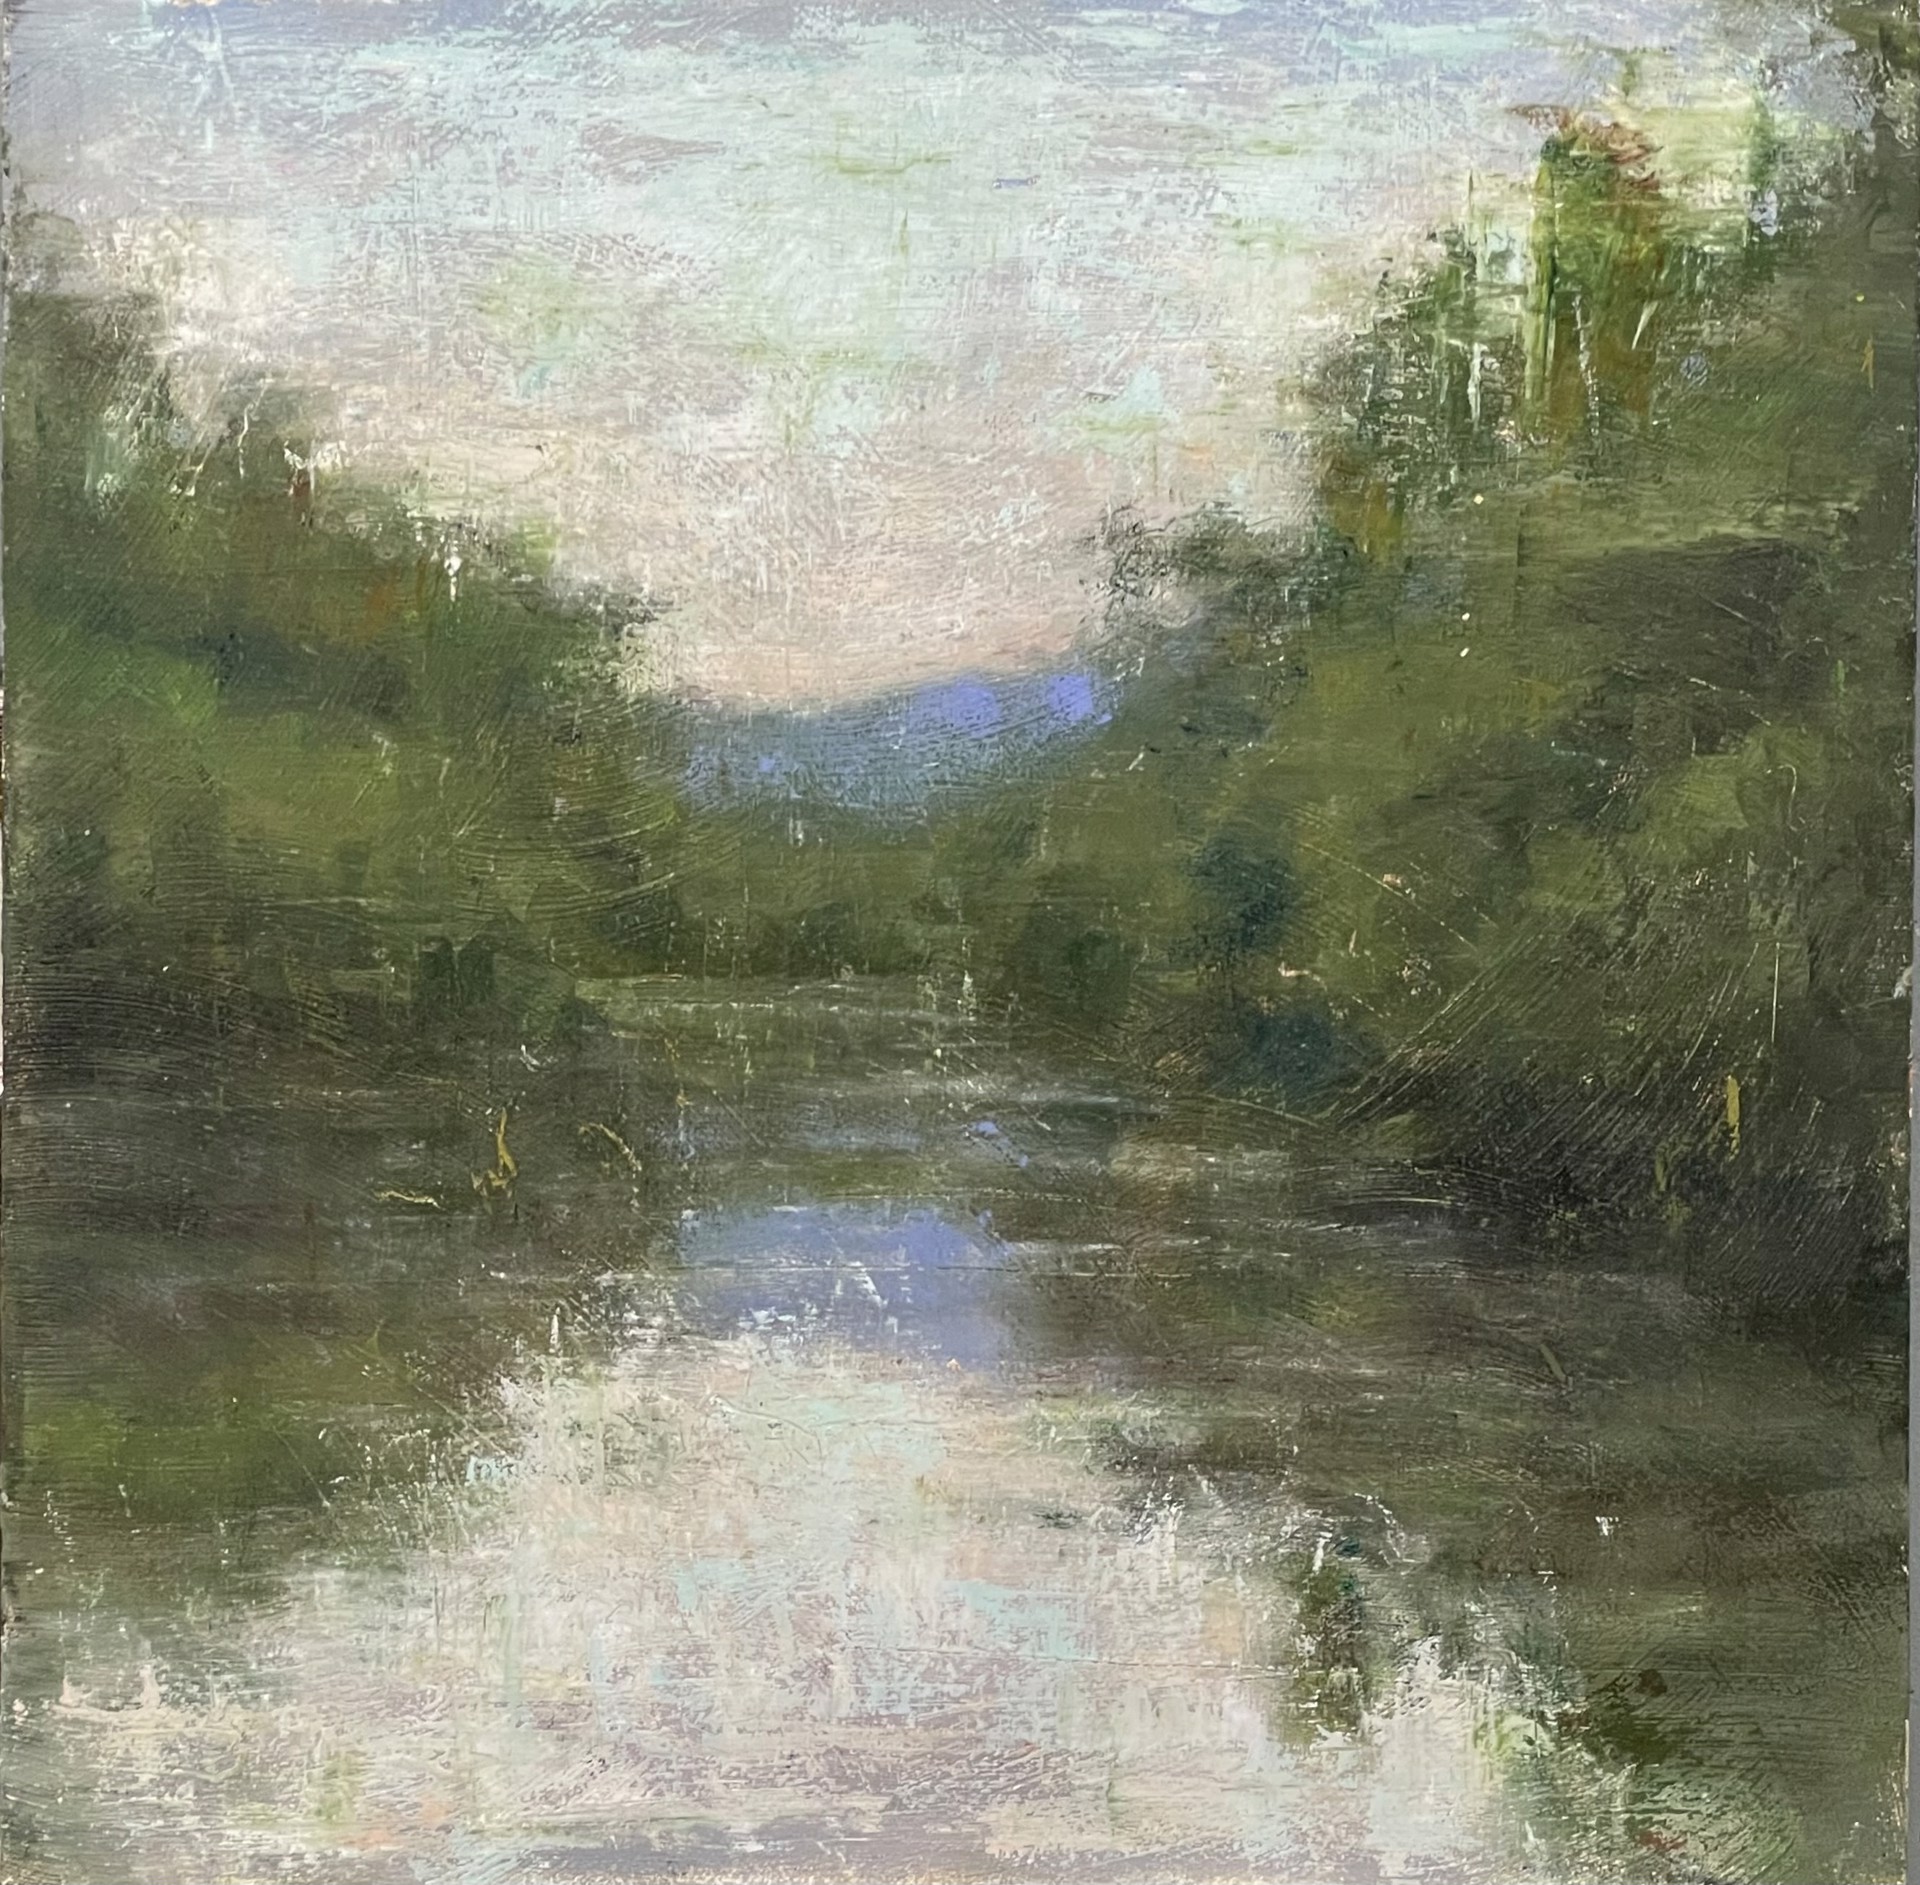 On the River by Brett Weaver